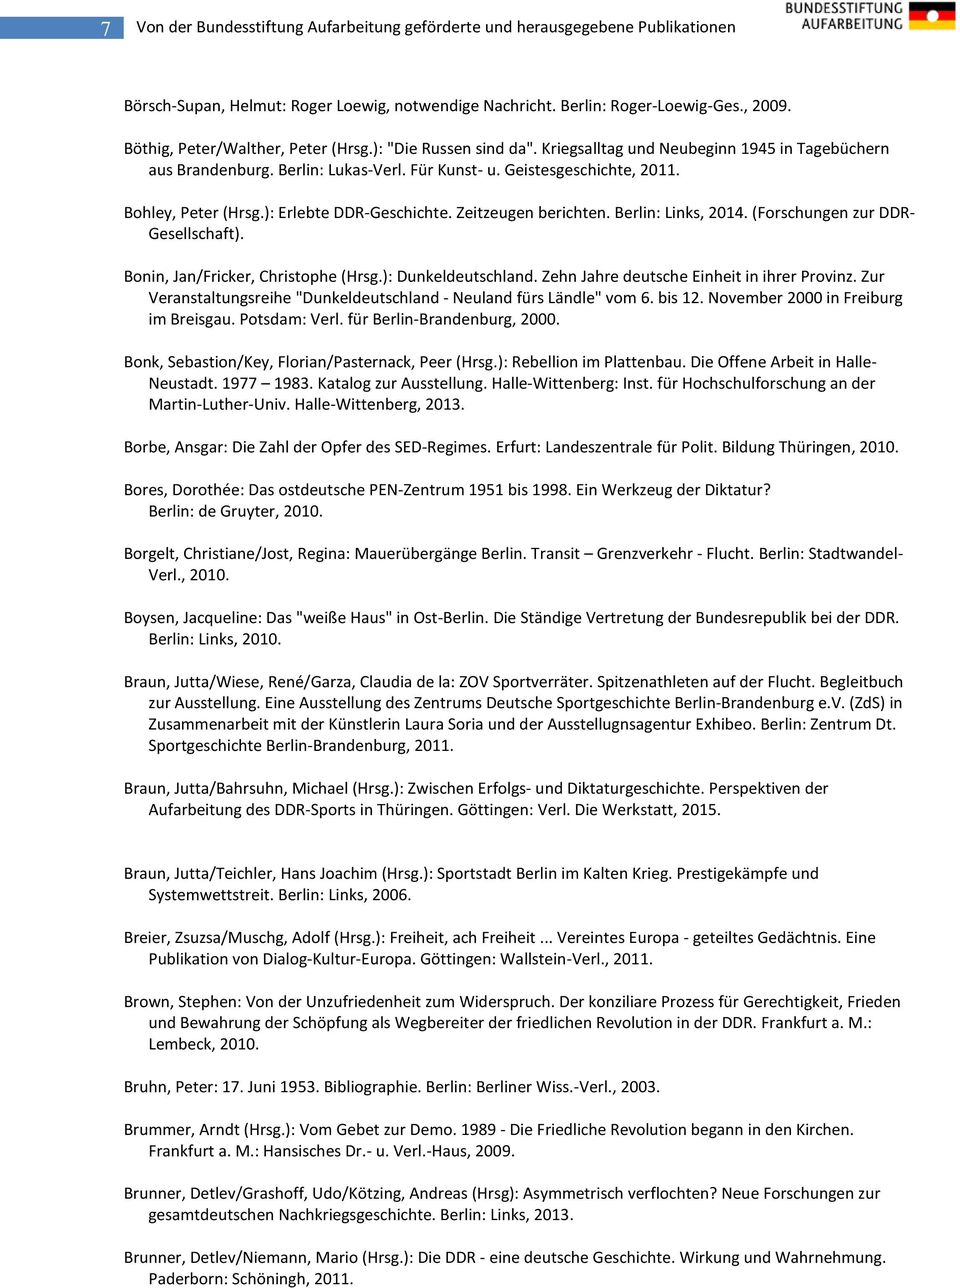 Bohley, Peter (Hrsg.): Erlebte DDR-Geschichte. Zeitzeugen berichten. Berlin: Links, 2014. (Forschungen zur DDR- Gesellschaft). Bonin, Jan/Fricker, Christophe (Hrsg.): Dunkeldeutschland.